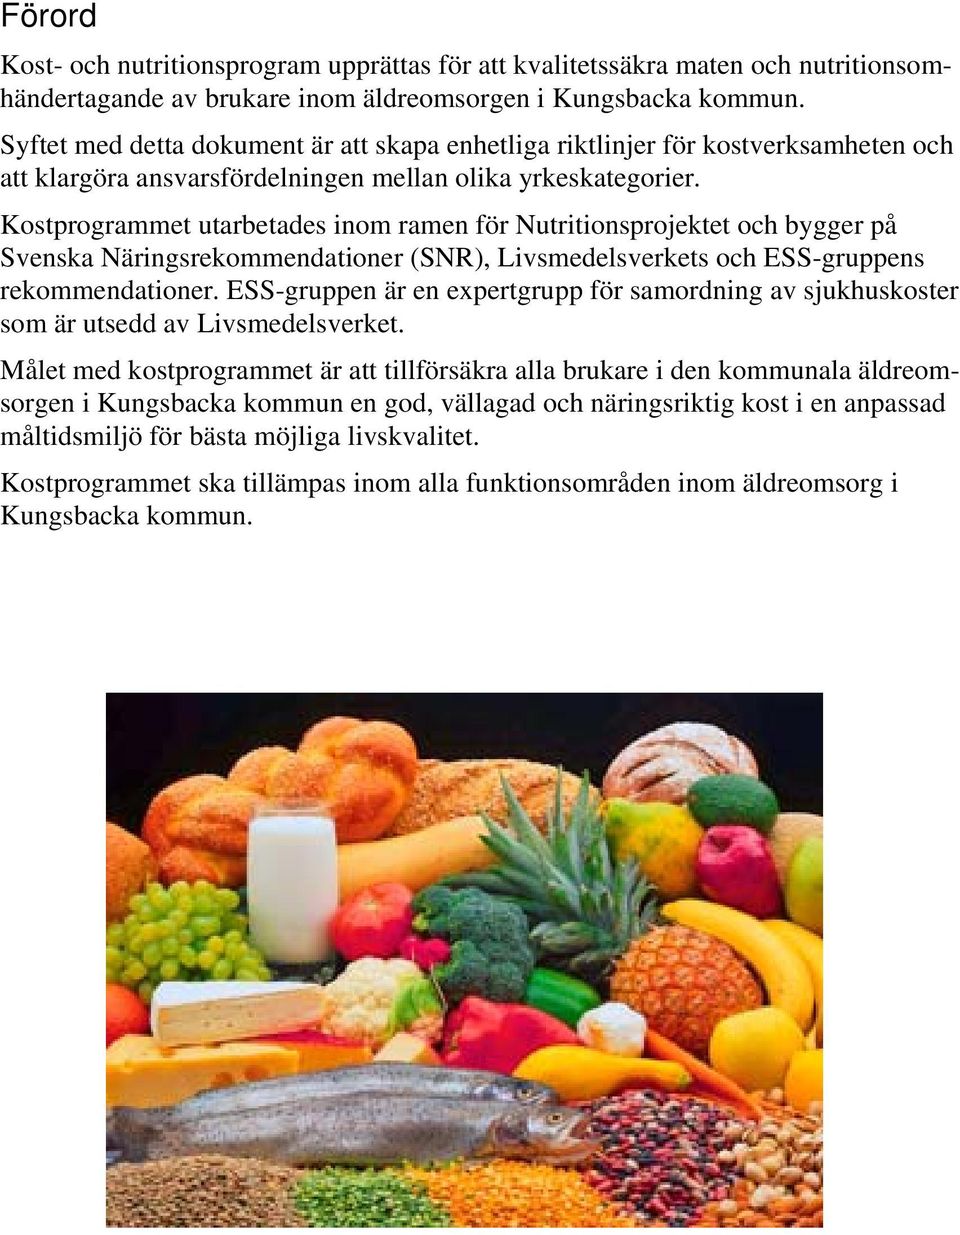 Kostprogrammet utarbetades inom ramen för Nutritionsprojektet och bygger på Svenska Näringsrekommendationer (SNR), Livsmedelsverkets och ESS-gruppens rekommendationer.